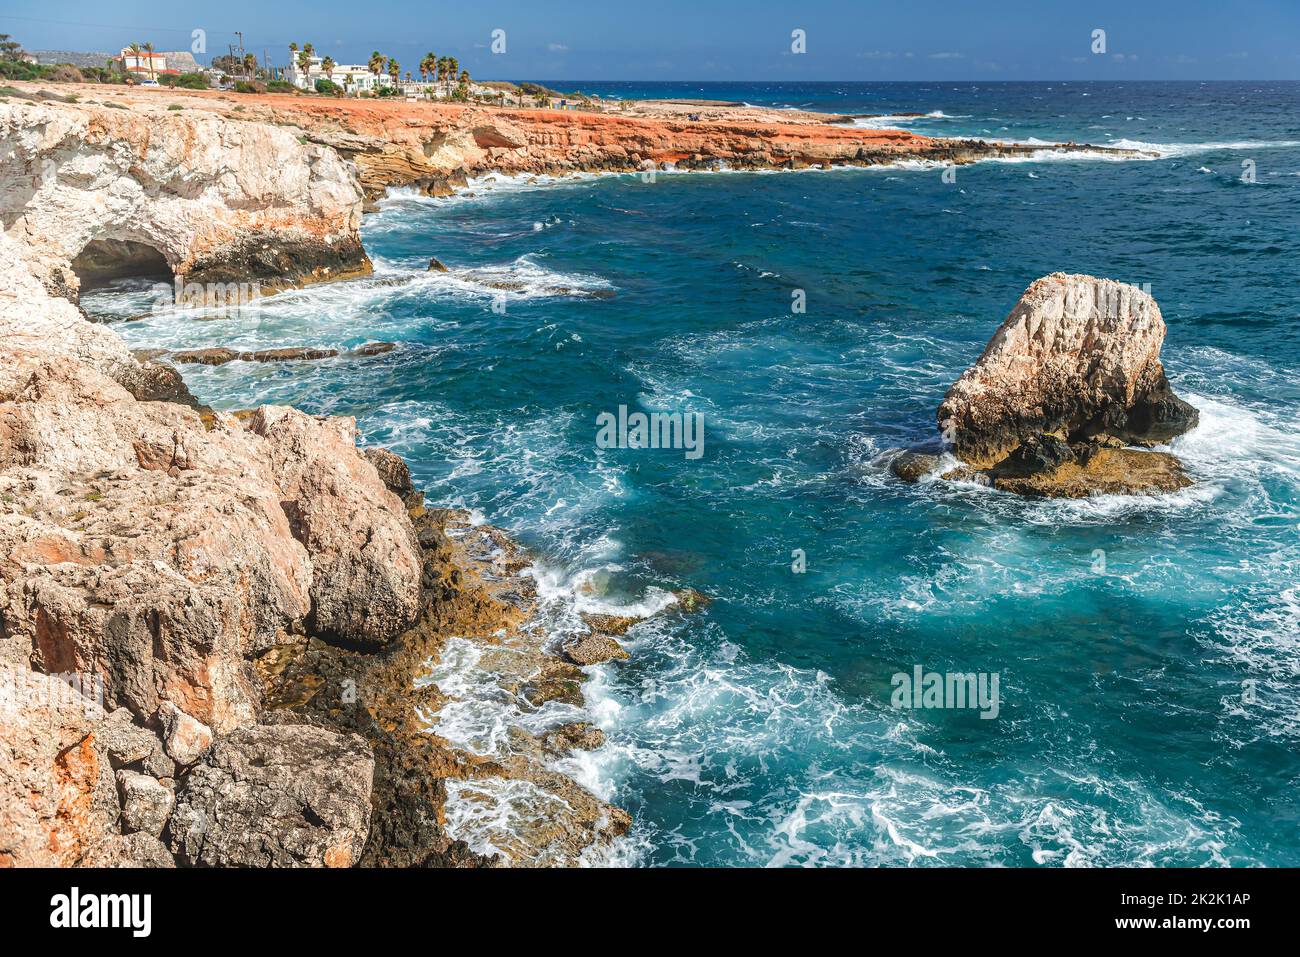 The rocky sea shore of Ayia Napa, Cyprus Stock Photo